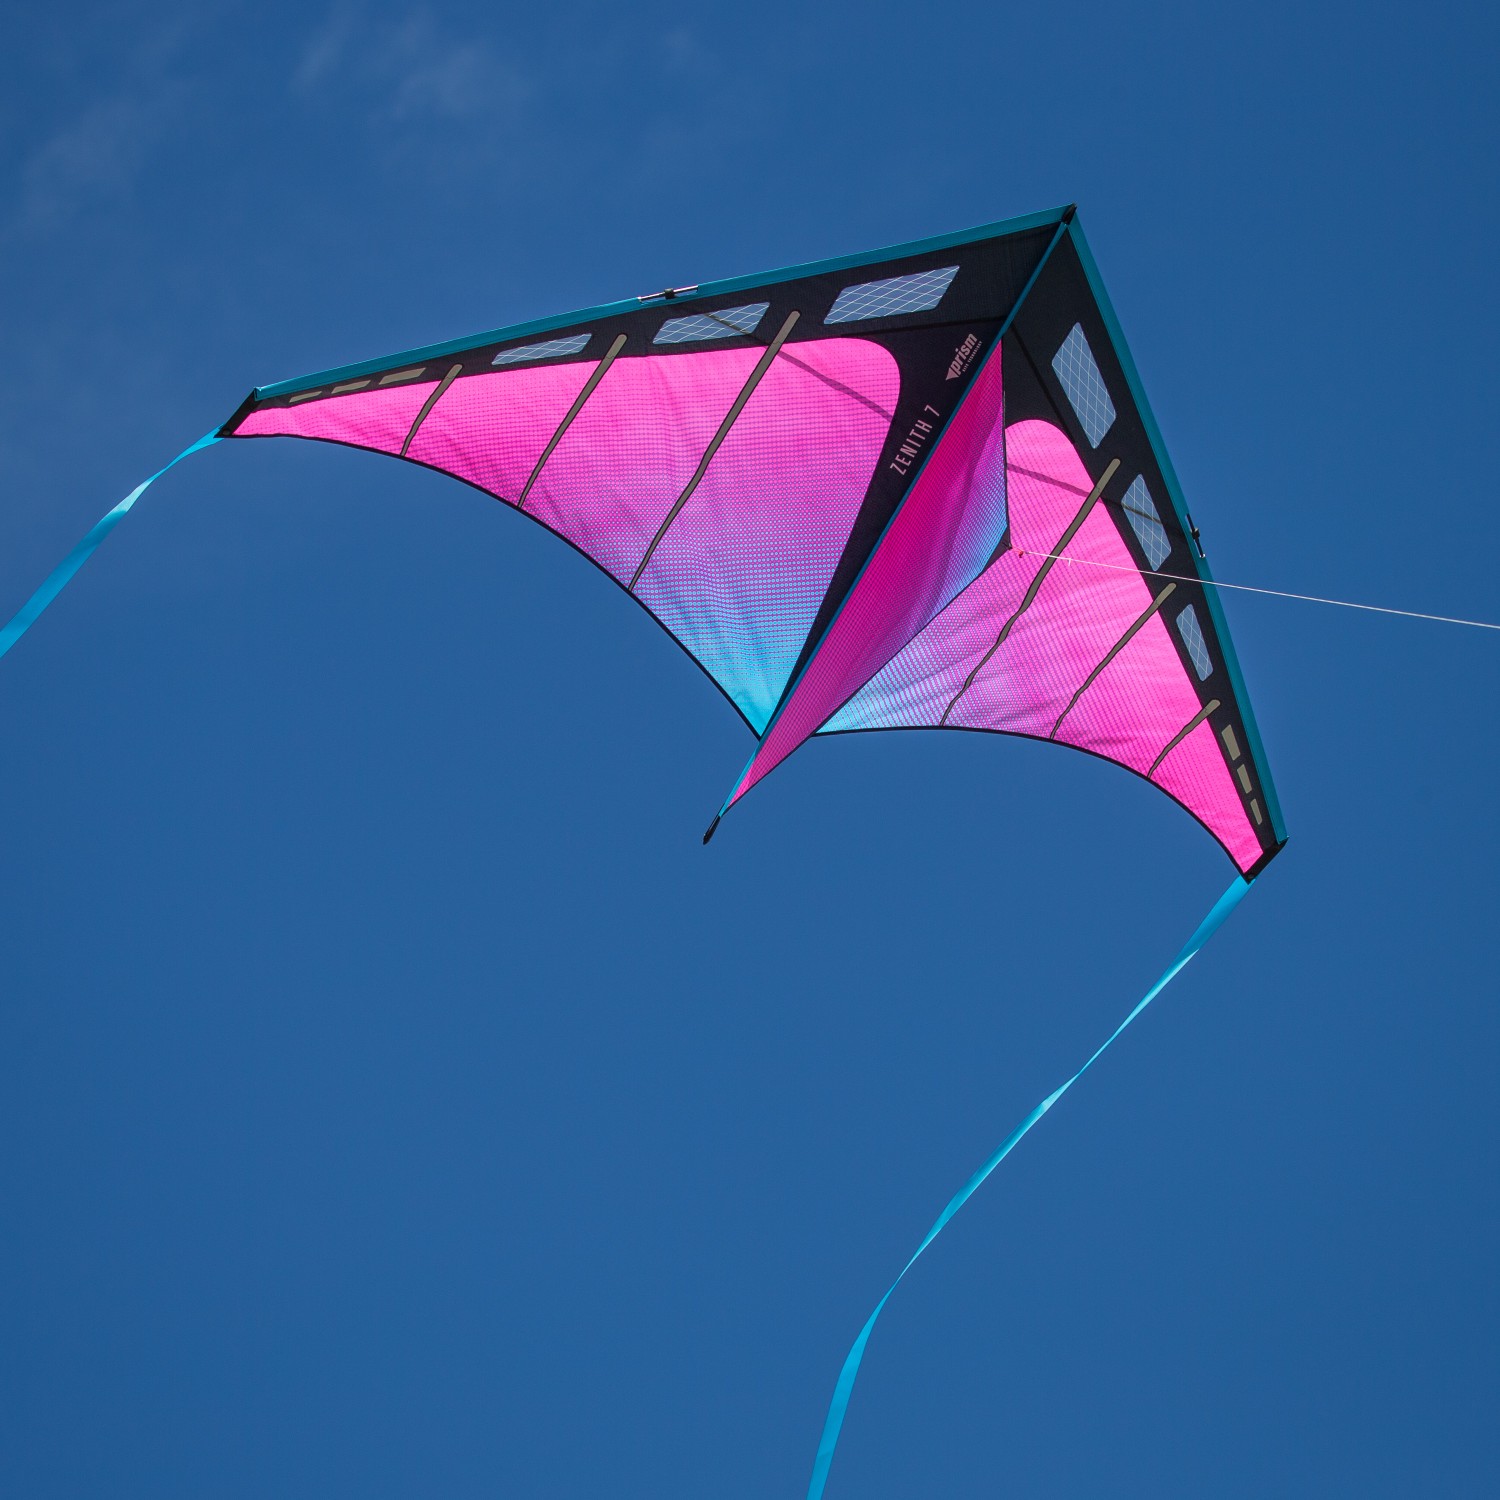 Ultraviolet Prism Zenith 5 Travel Delta Kite 